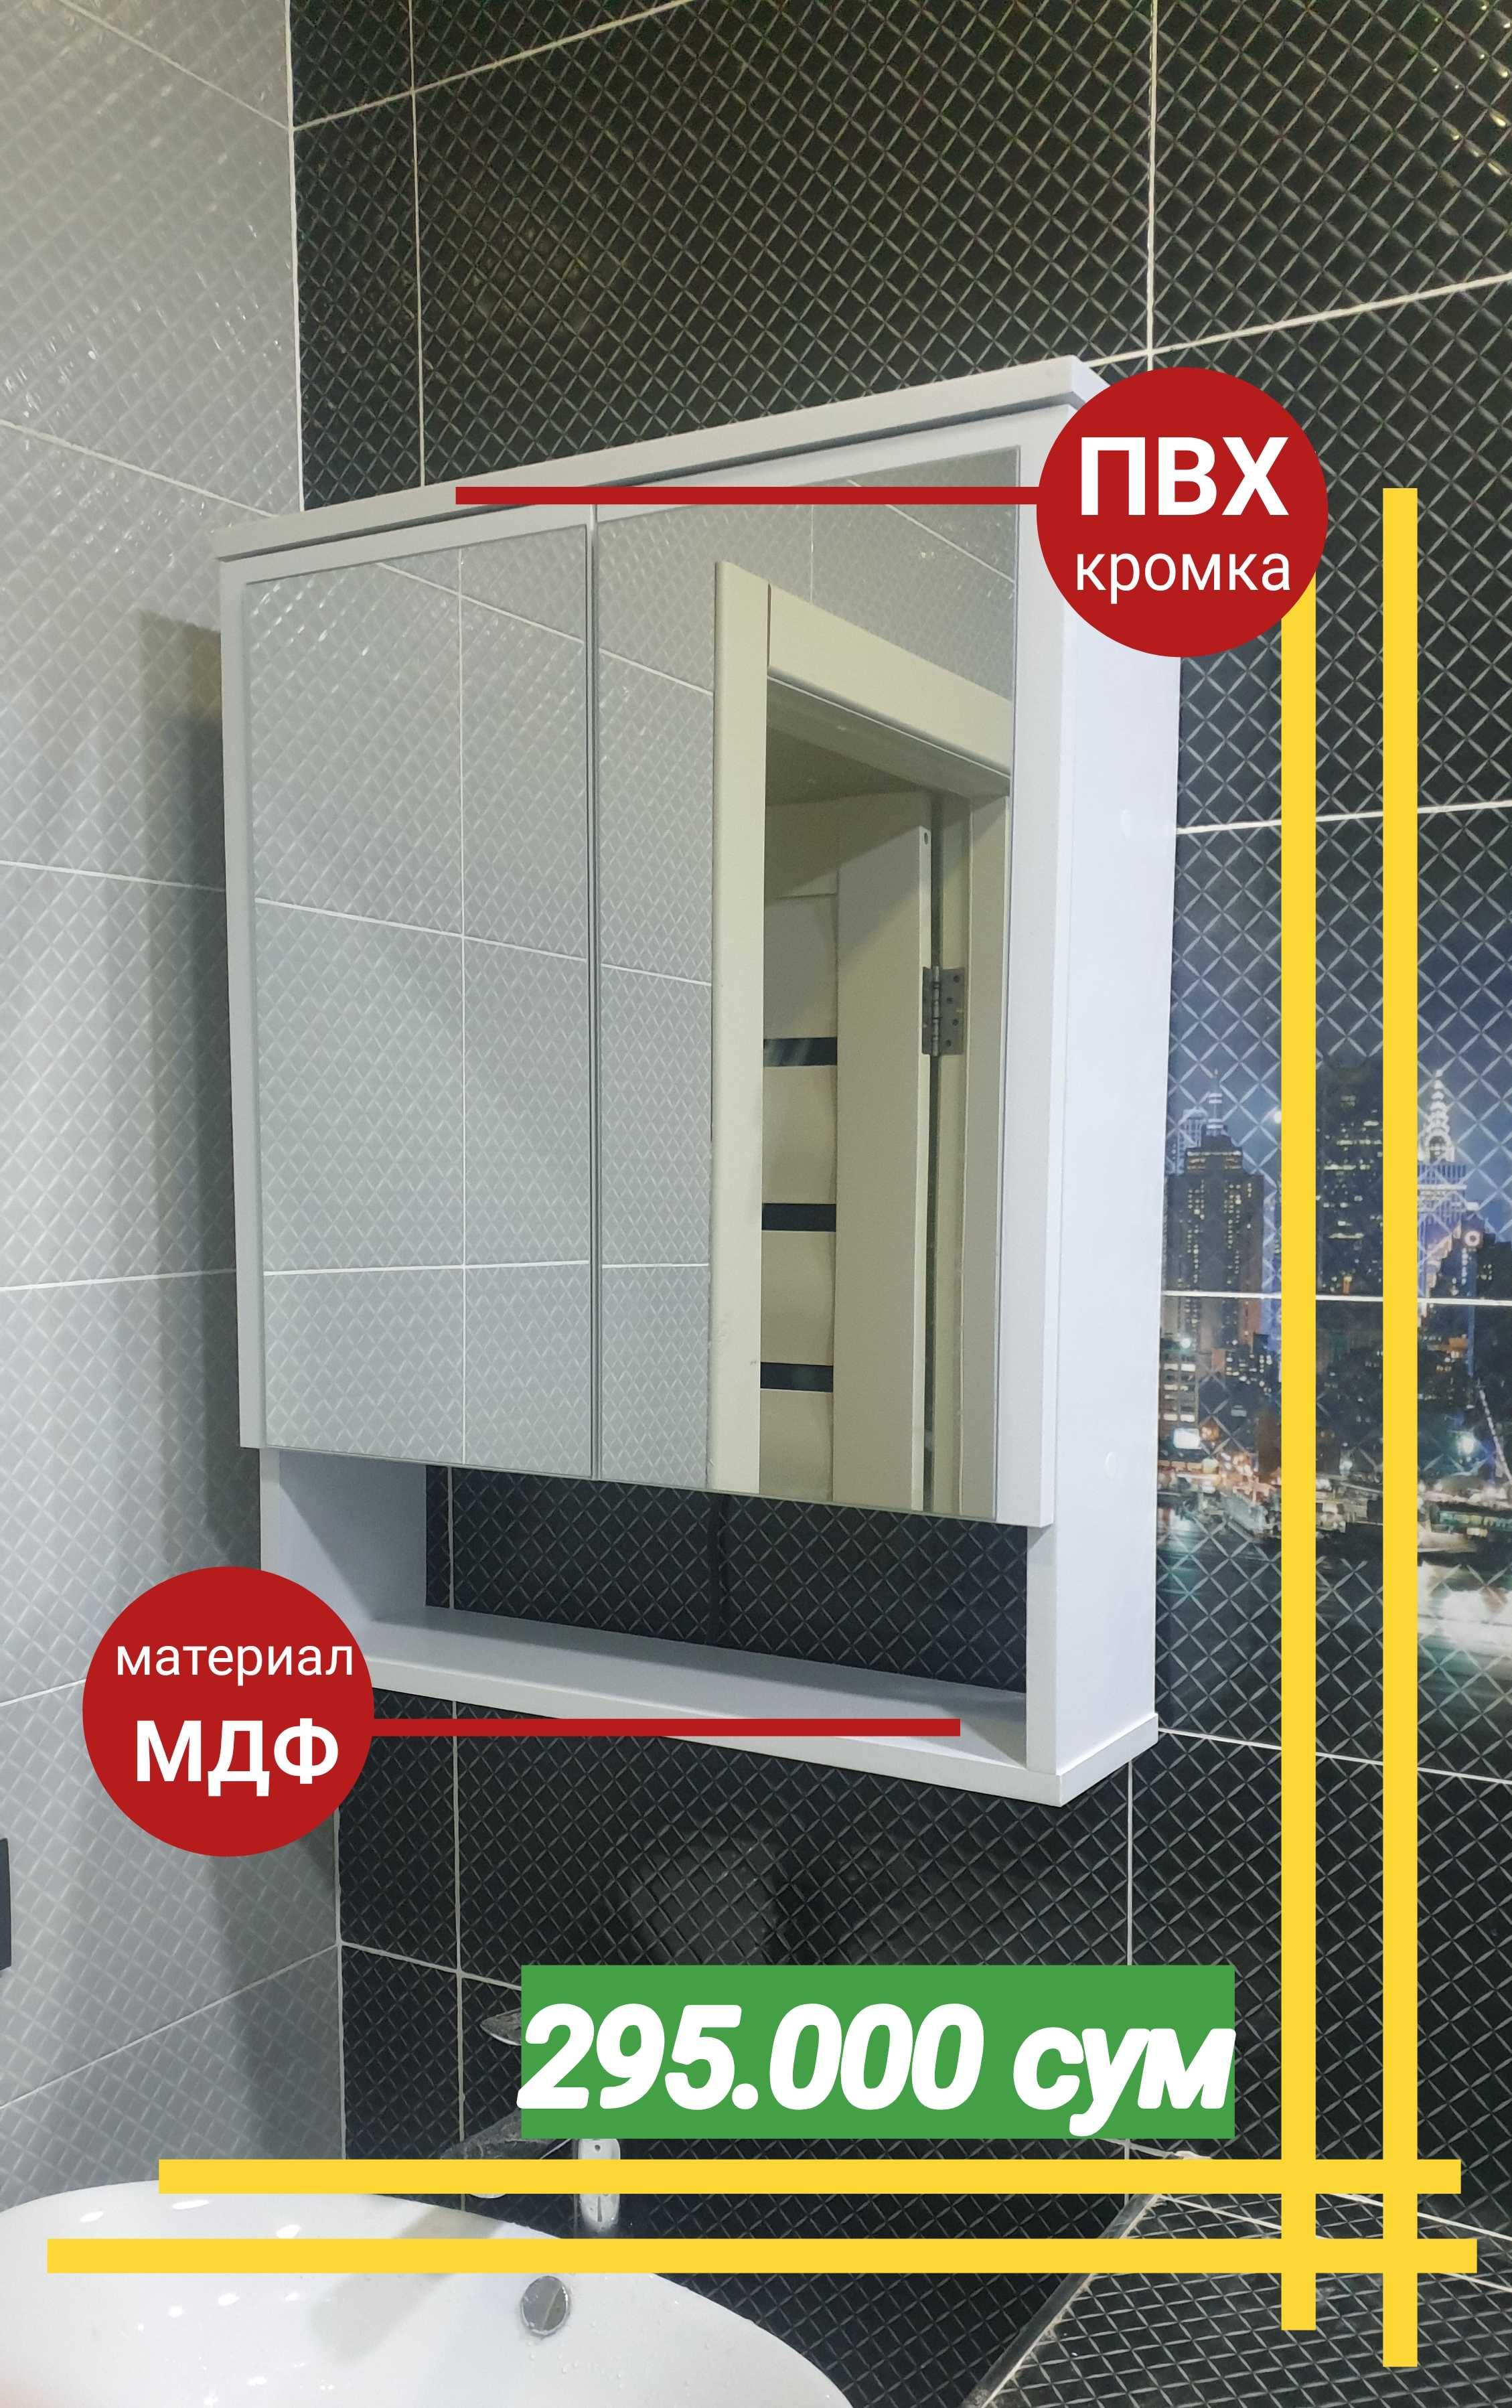 Навесной шкафчик для ванной комнаты материал МДФ водостойкий.